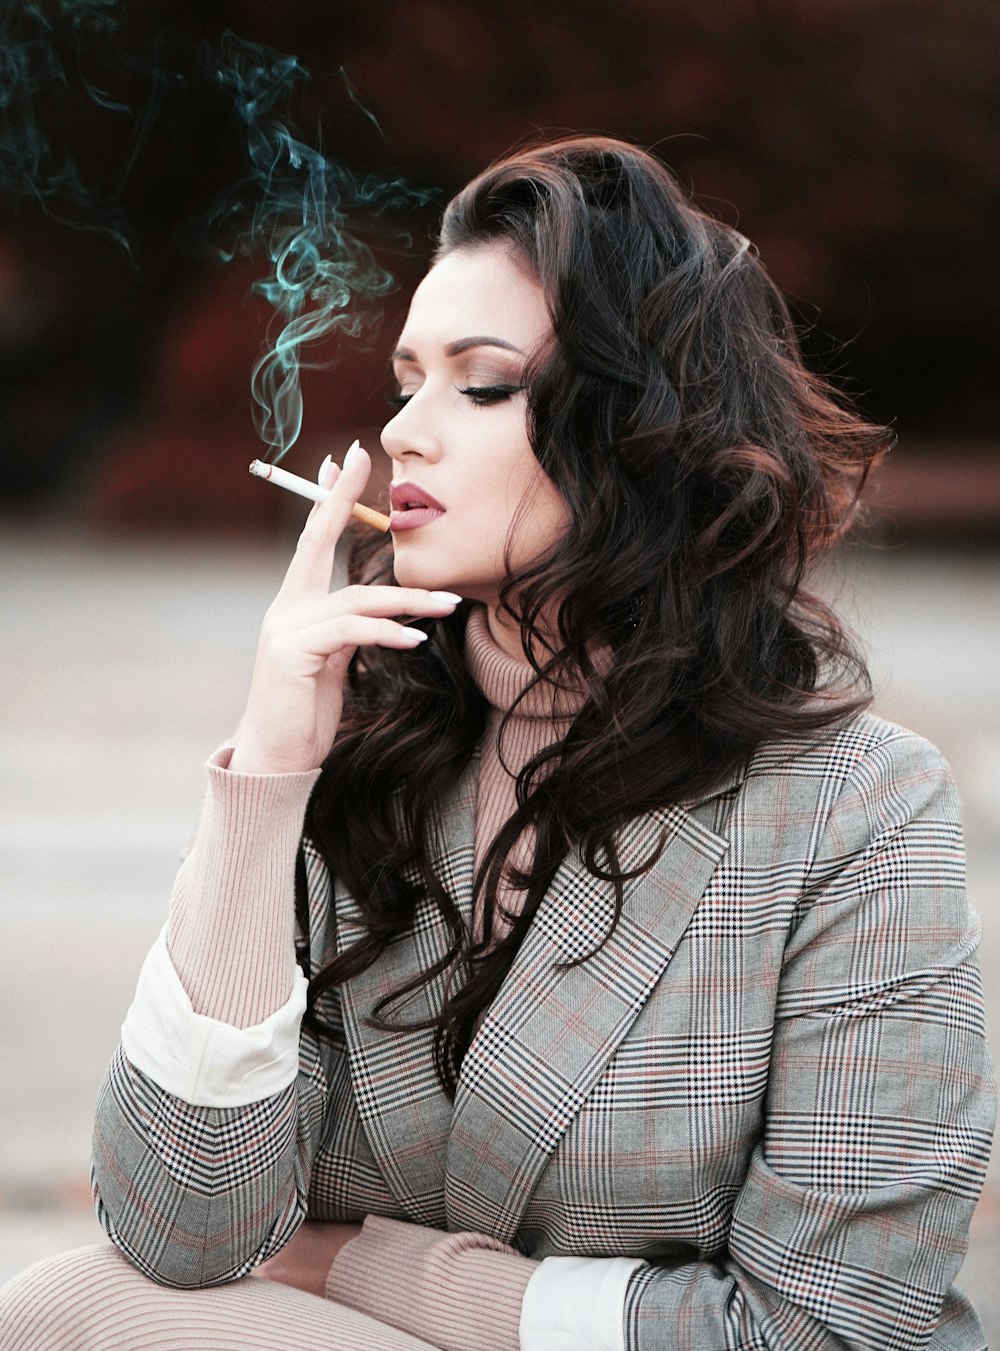 woman smoking at daytime